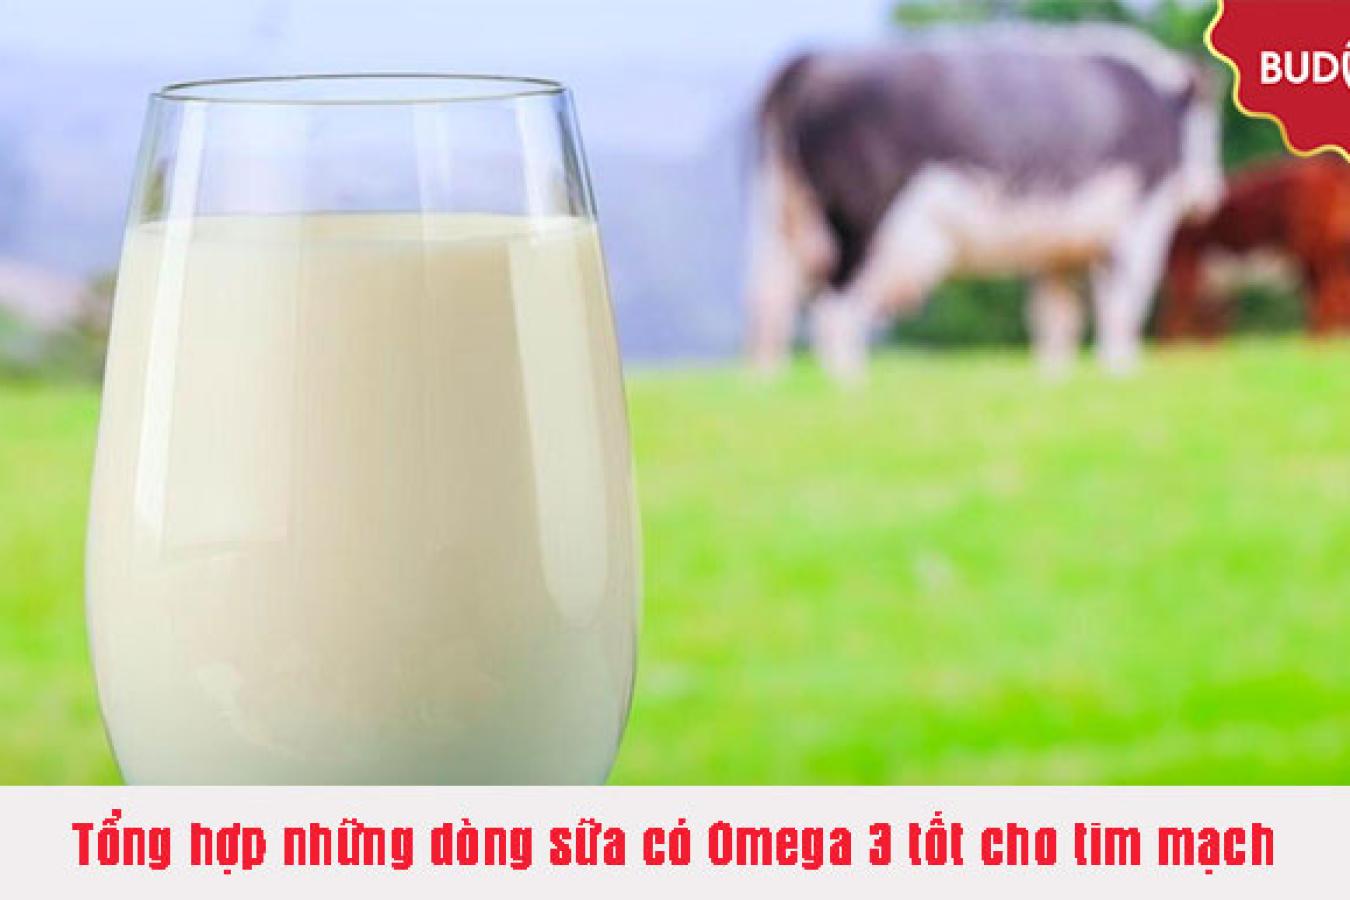 Tổng hợp những dòng sữa có Omega 3 tốt cho tim mạch